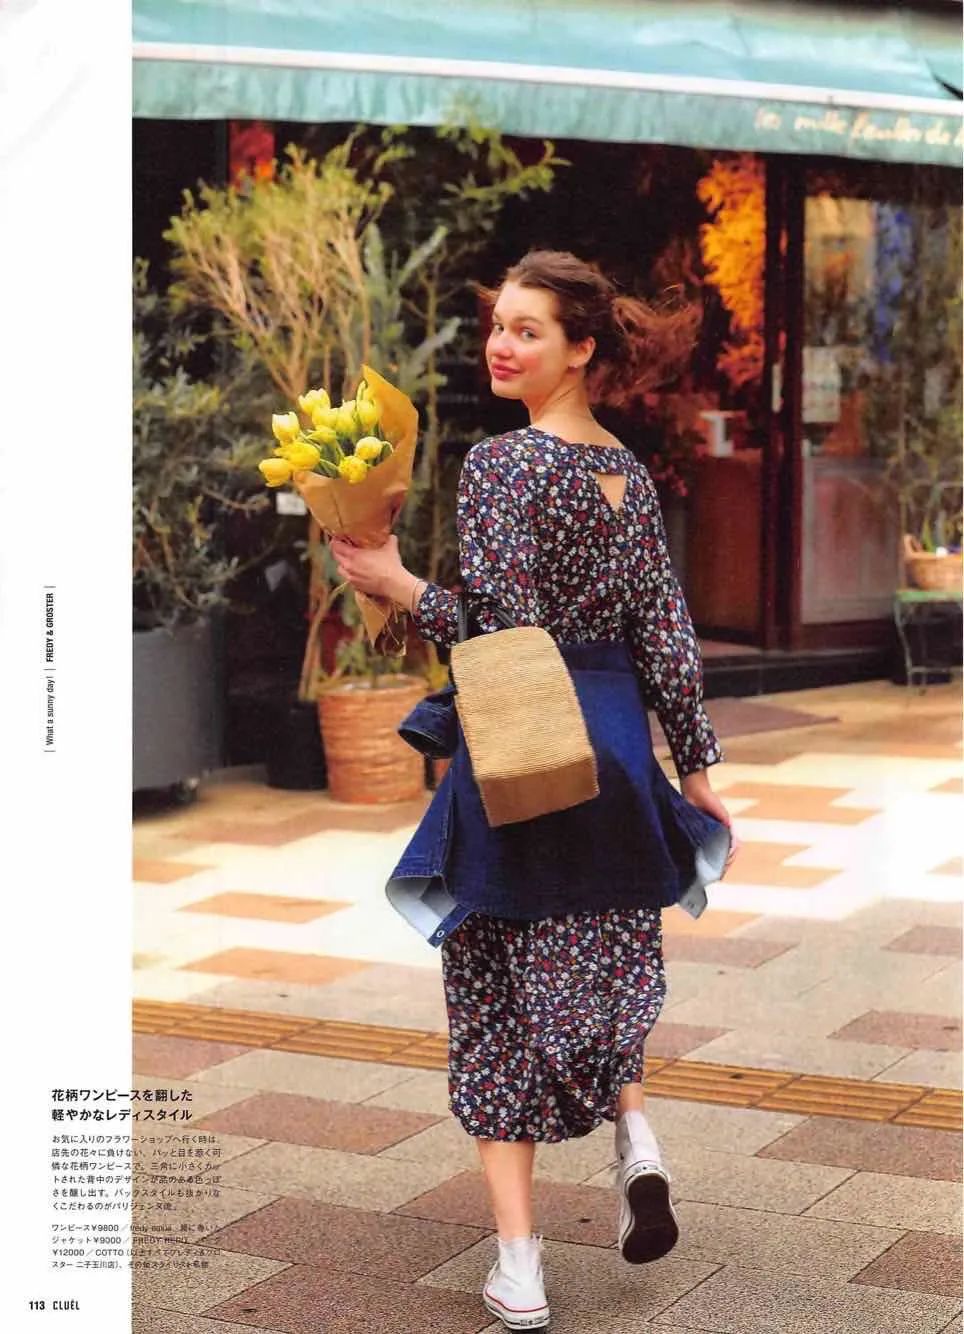 【杂志分享】2021年3月日本杂志·穿搭妆容分享